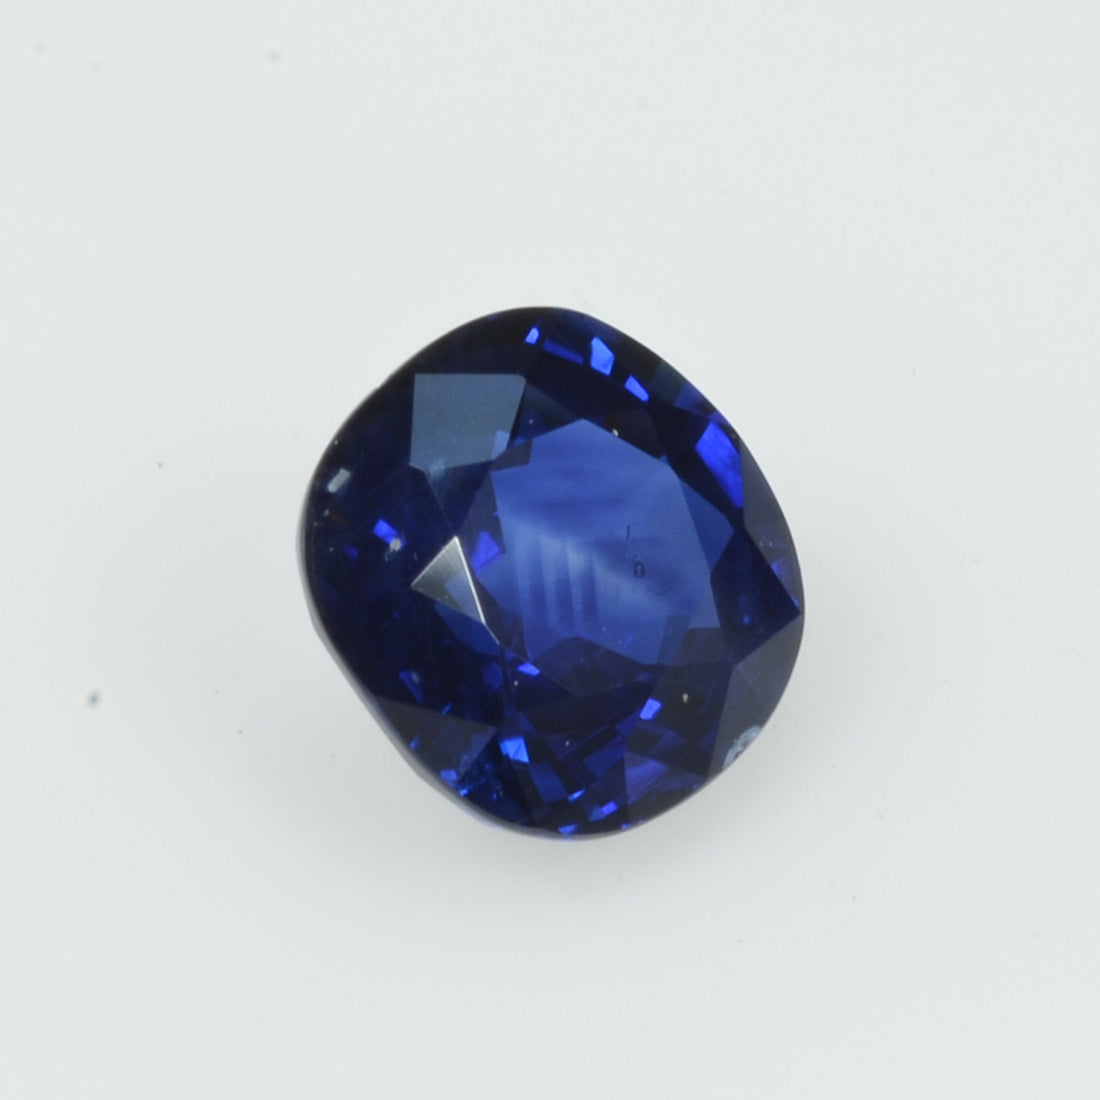 1.08 cts Natural Blue Sapphire Loose Gemstone Cushion Cut - Thai Gems Export Ltd.